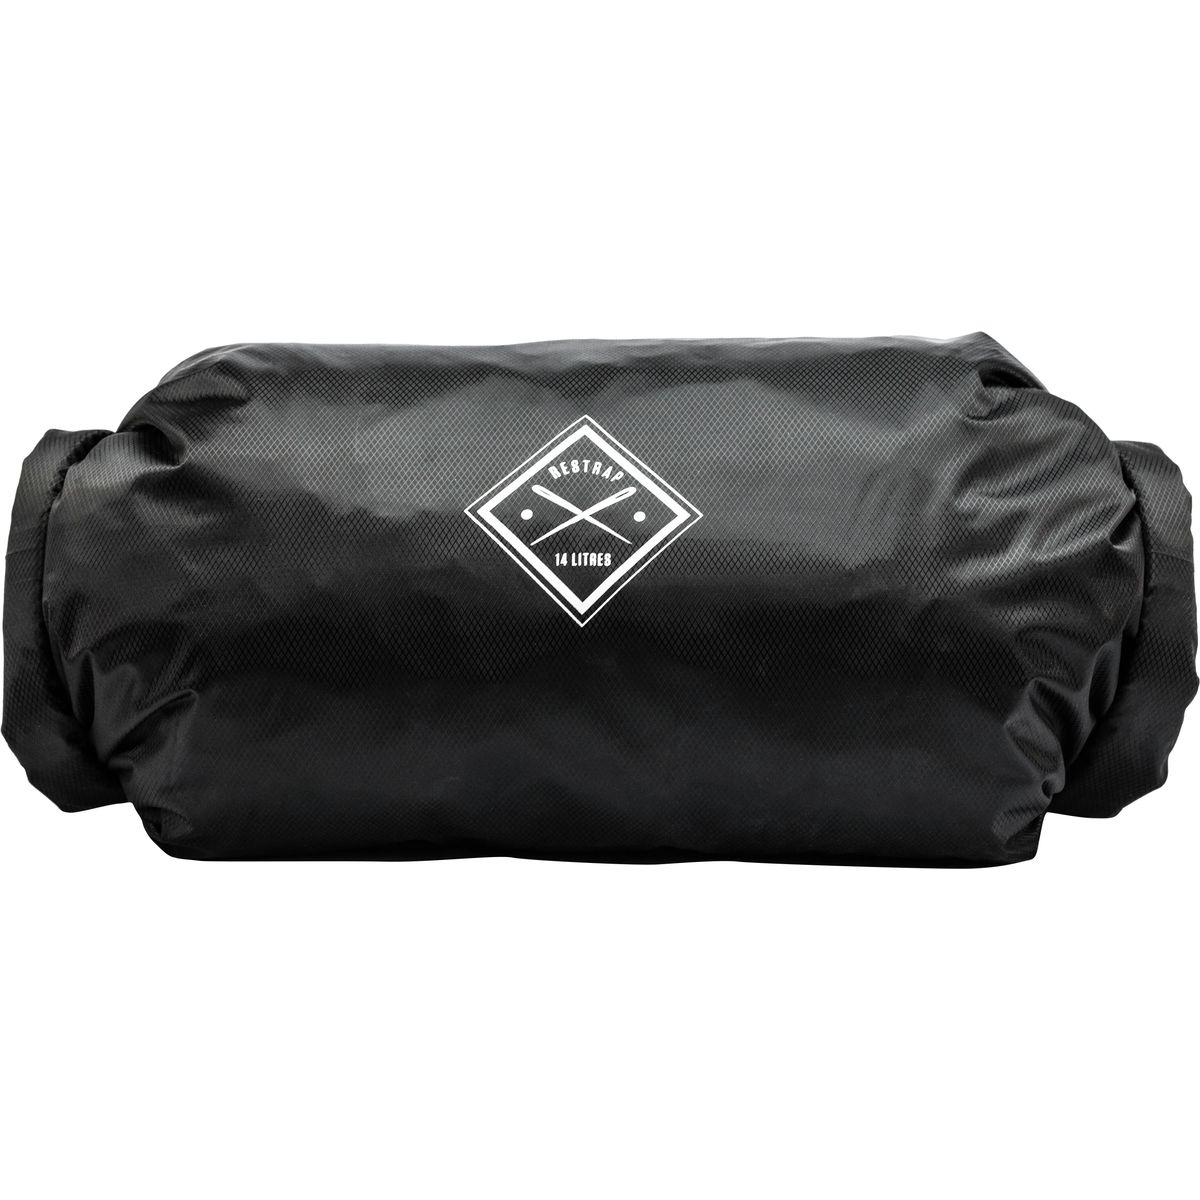 Сухой мешок - двойной рулон Restrap, черный pew tactical folding mesh recycling bag roll up otb aquatic tyr sundry bag